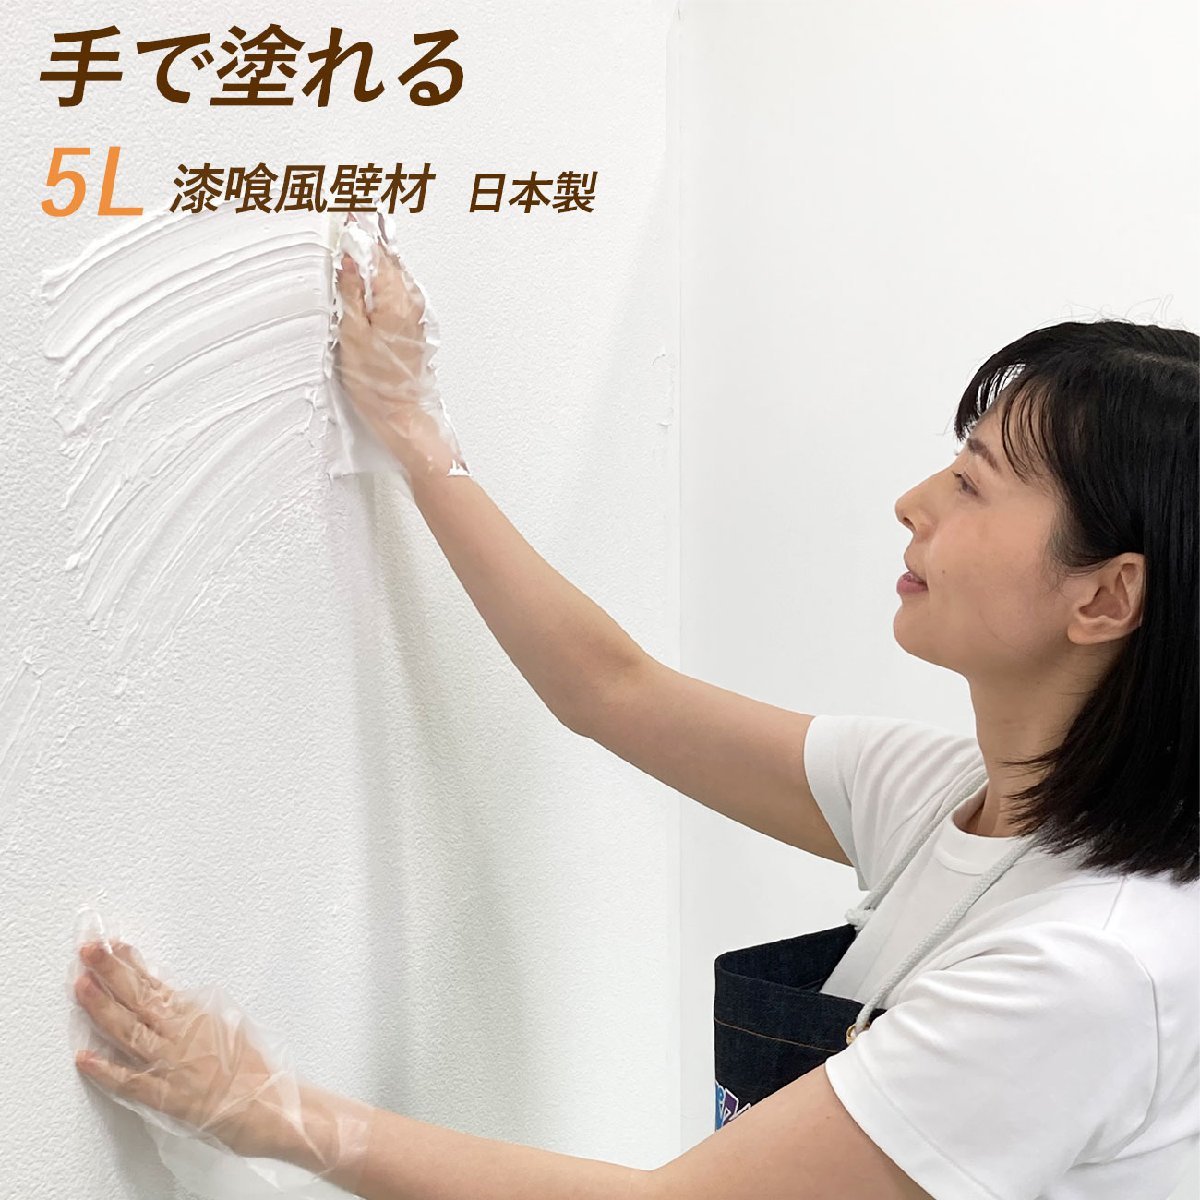 日本製 ホワイト 白 壁材 塗料 塗装 抗菌 塗る 壁 漆喰風 漆喰 ペンキ 外壁 コンクリート ブロック 壁紙 木 木材 5L